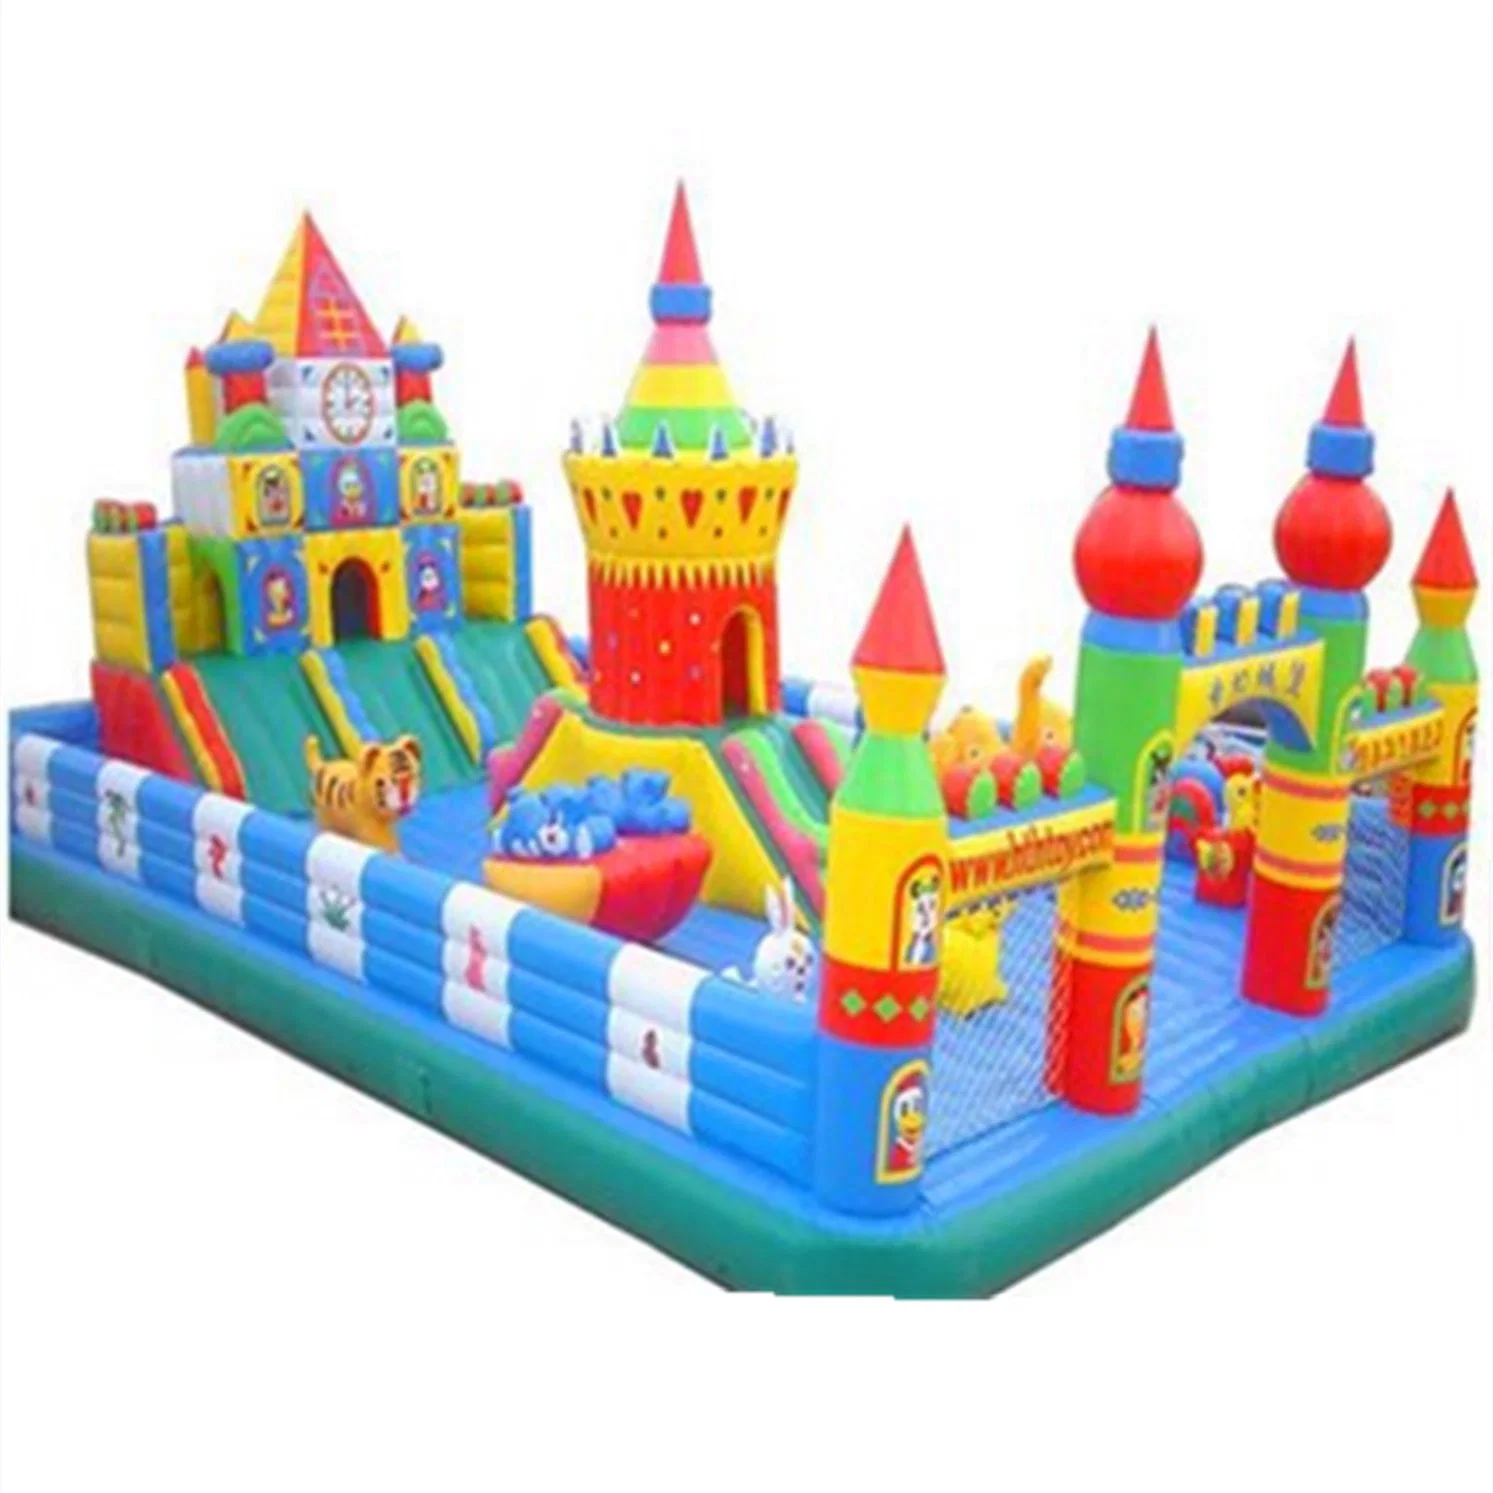 Outdoor Children's Inflatable Castle Amusement Park Equipment Slide Toy 44CB